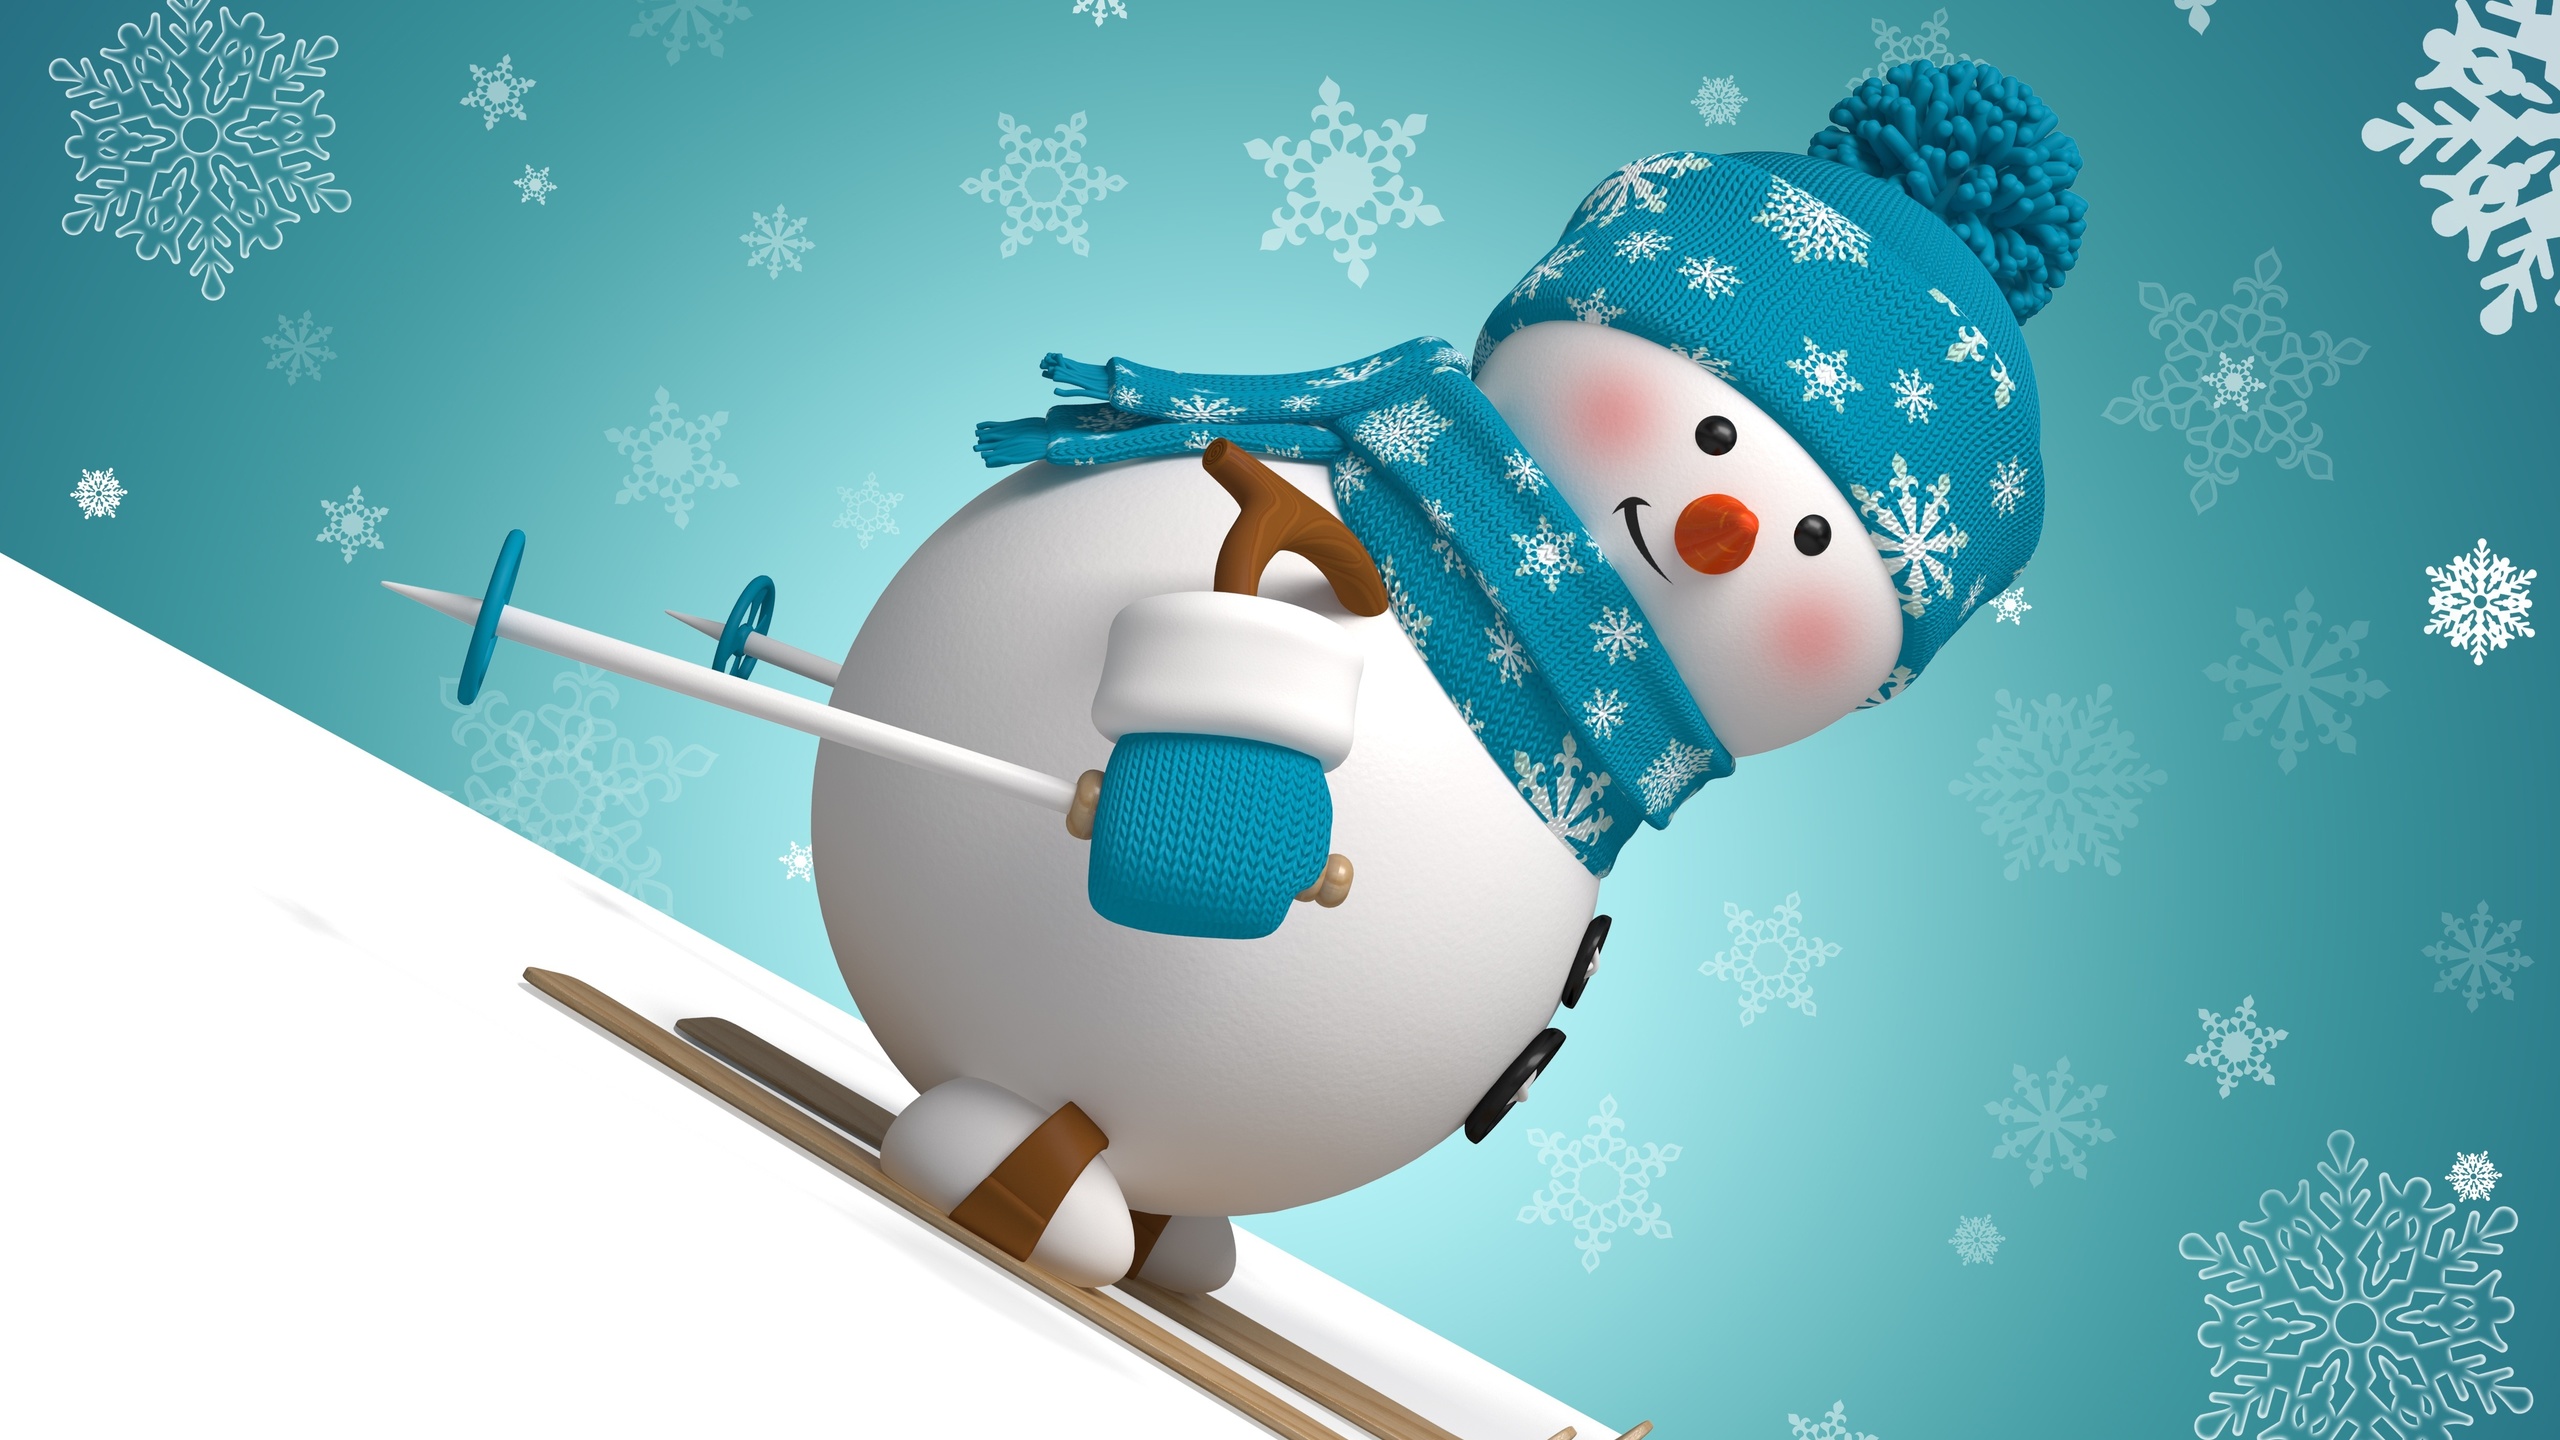 Скачать обои бесплатно Снеговик, Художественные, Катание На Лыжах картинка на рабочий стол ПК